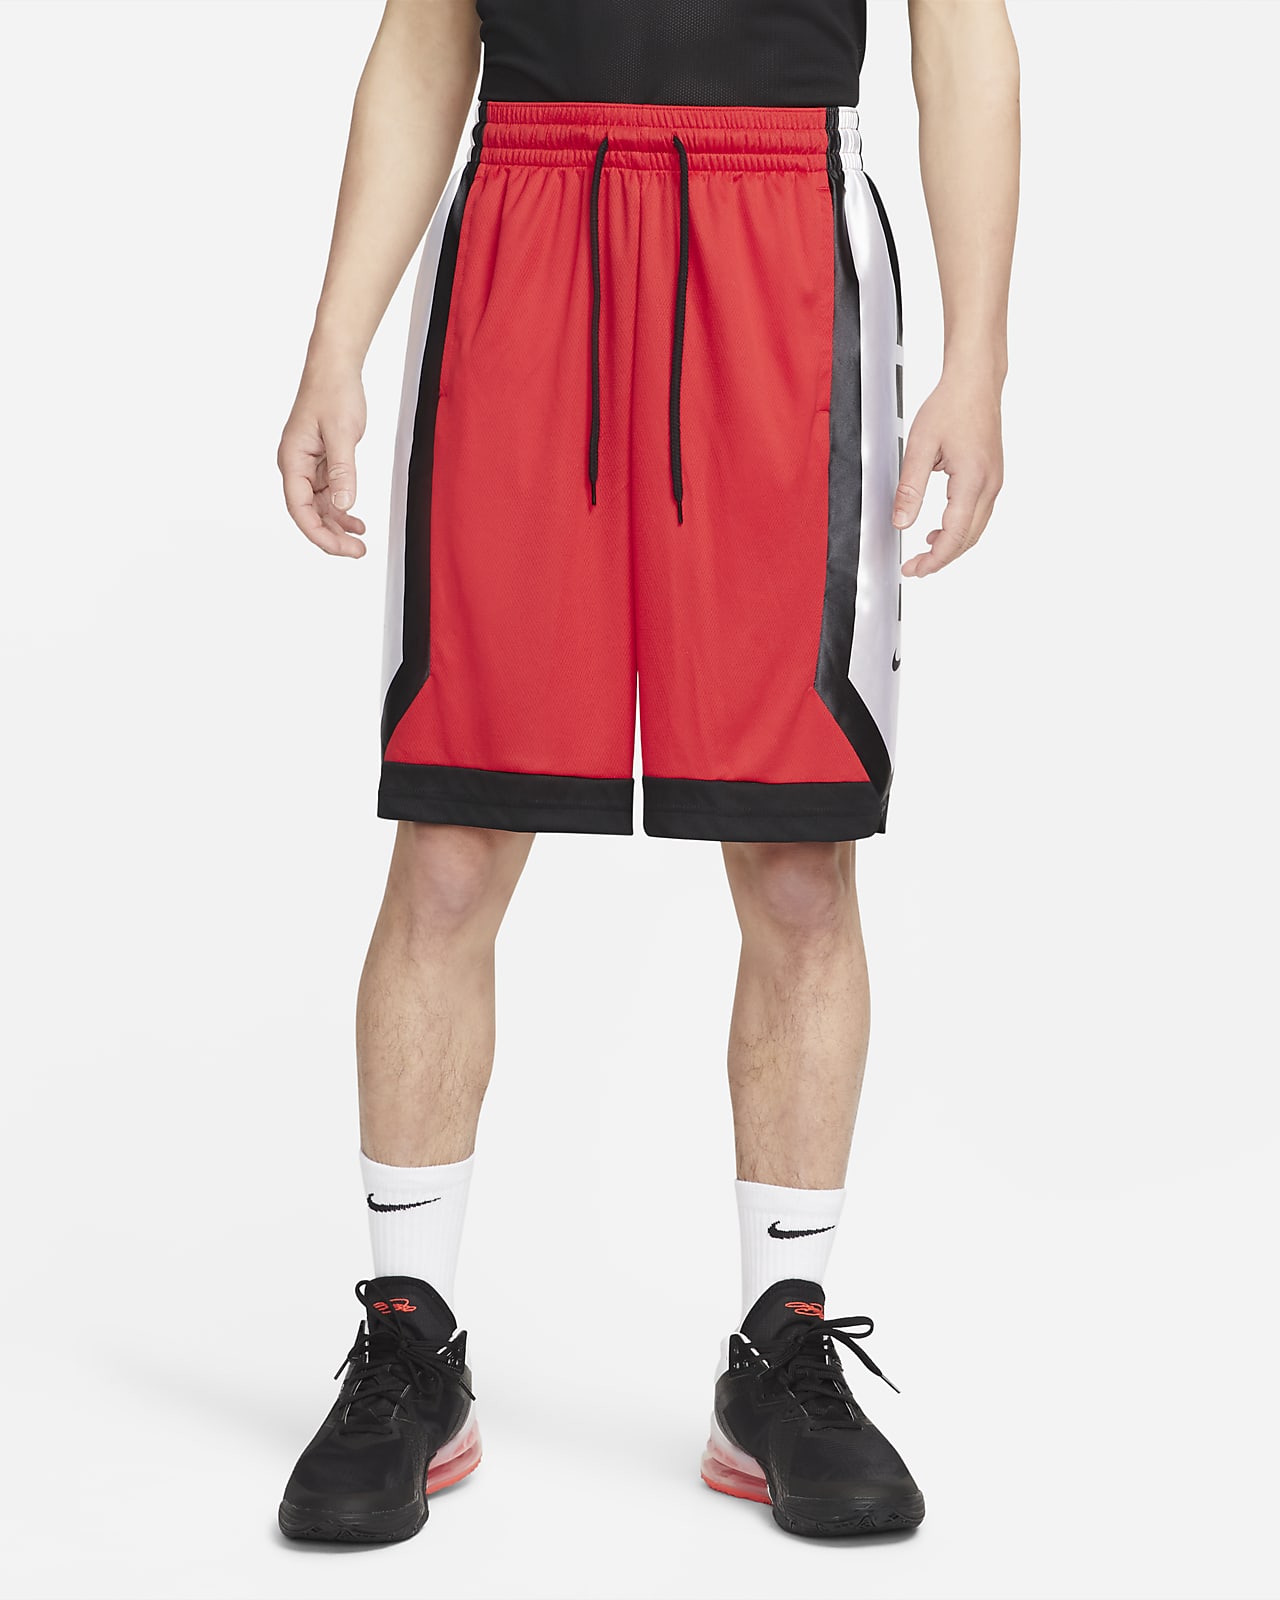 Shorts de básquetbol para hombre Nike Dri-FIT Elite